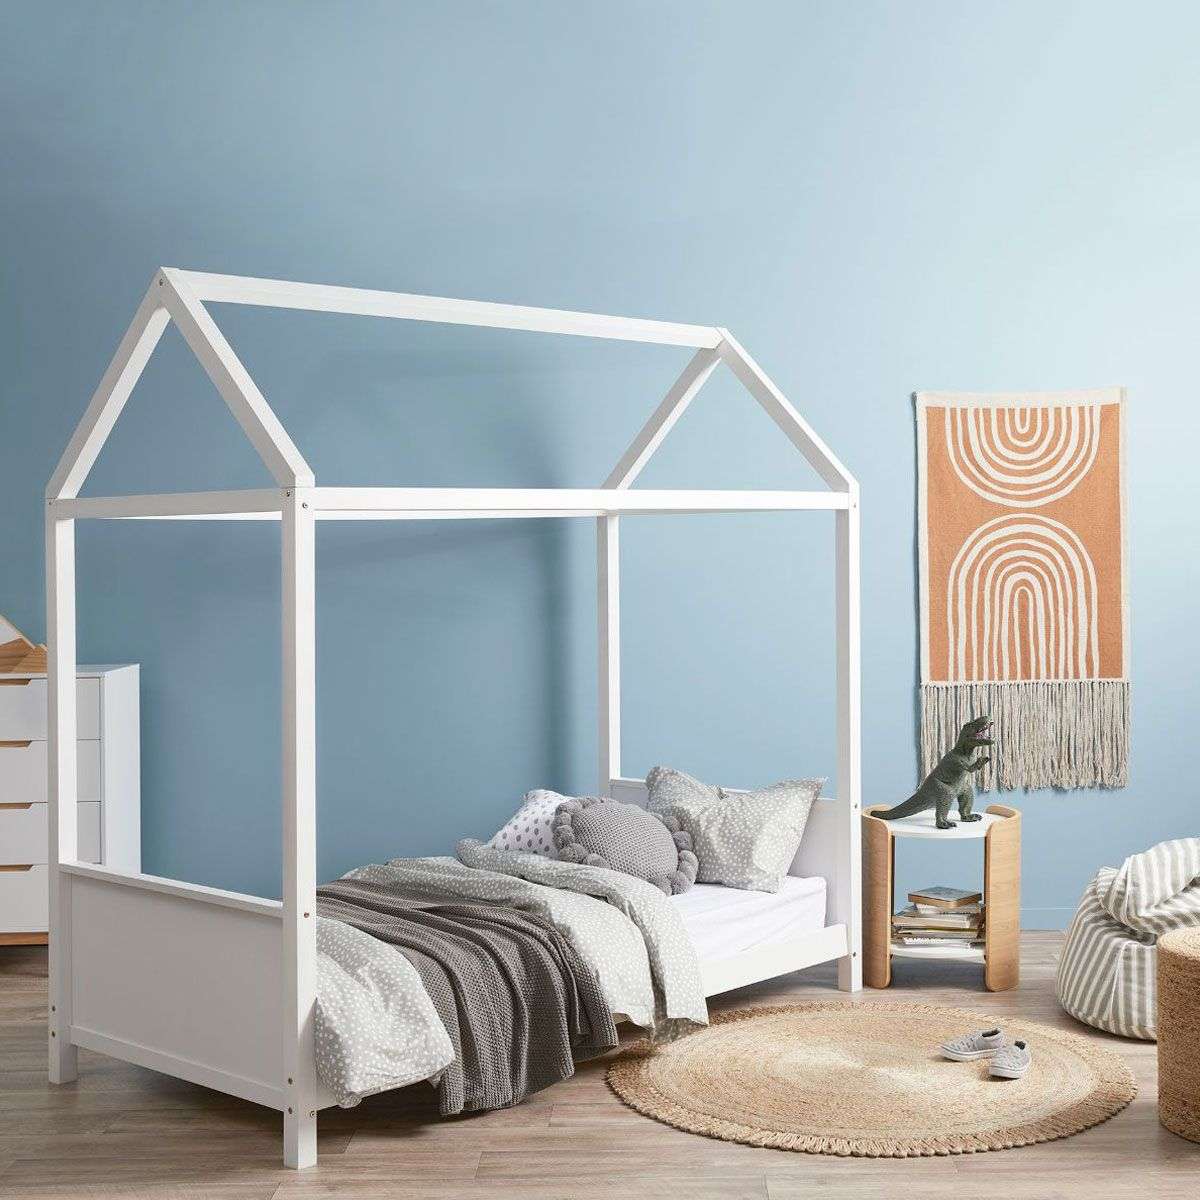 Finn Kids House Bed - Single - White